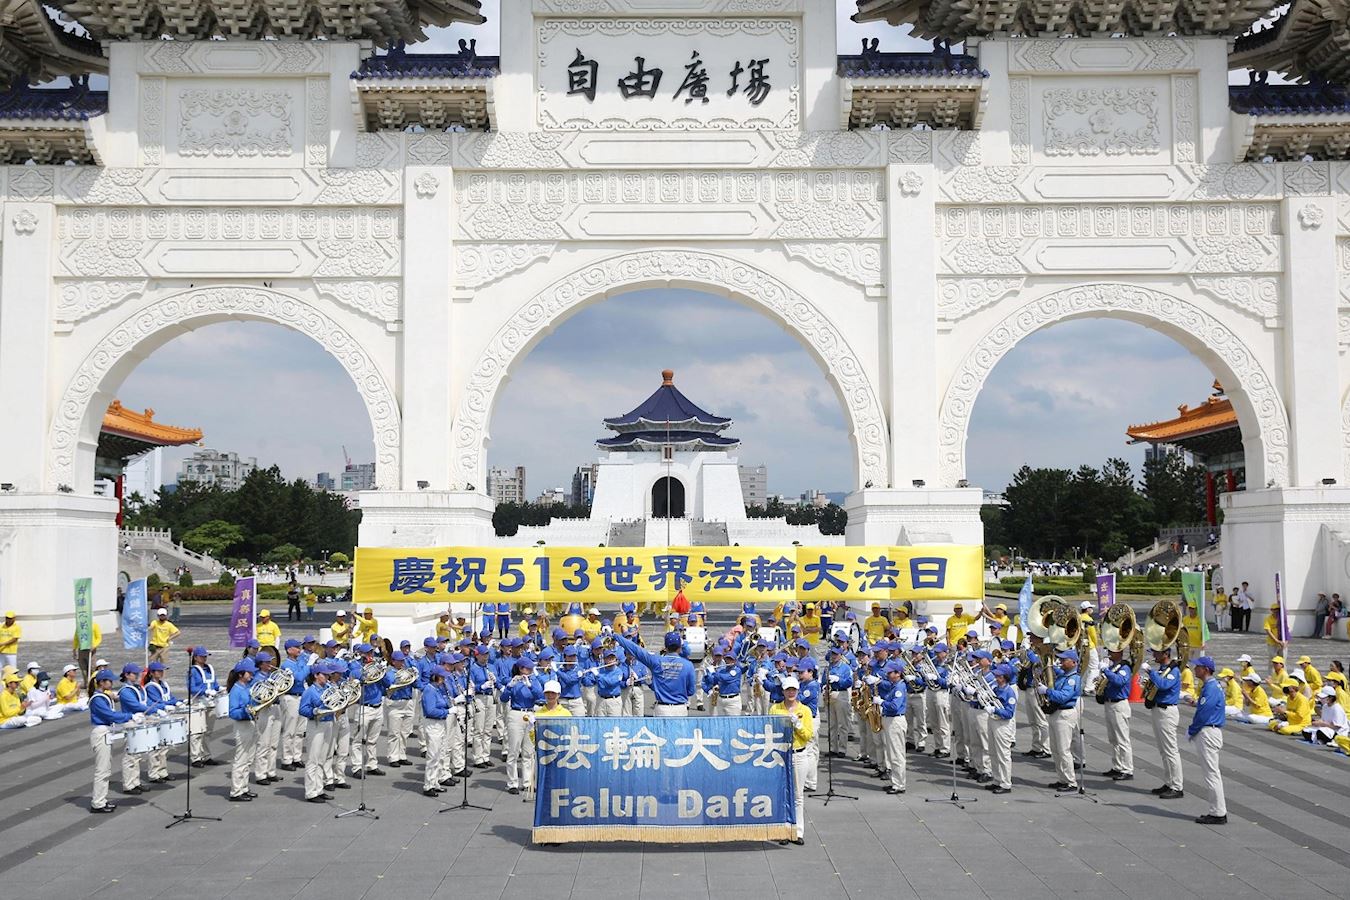 '圖1：二零二三年五月六日，臺灣北部近法輪功學員在台北自由廣場，舉辦慶祝法輪功弘傳31周年。圖中，天國樂團在演奏。'